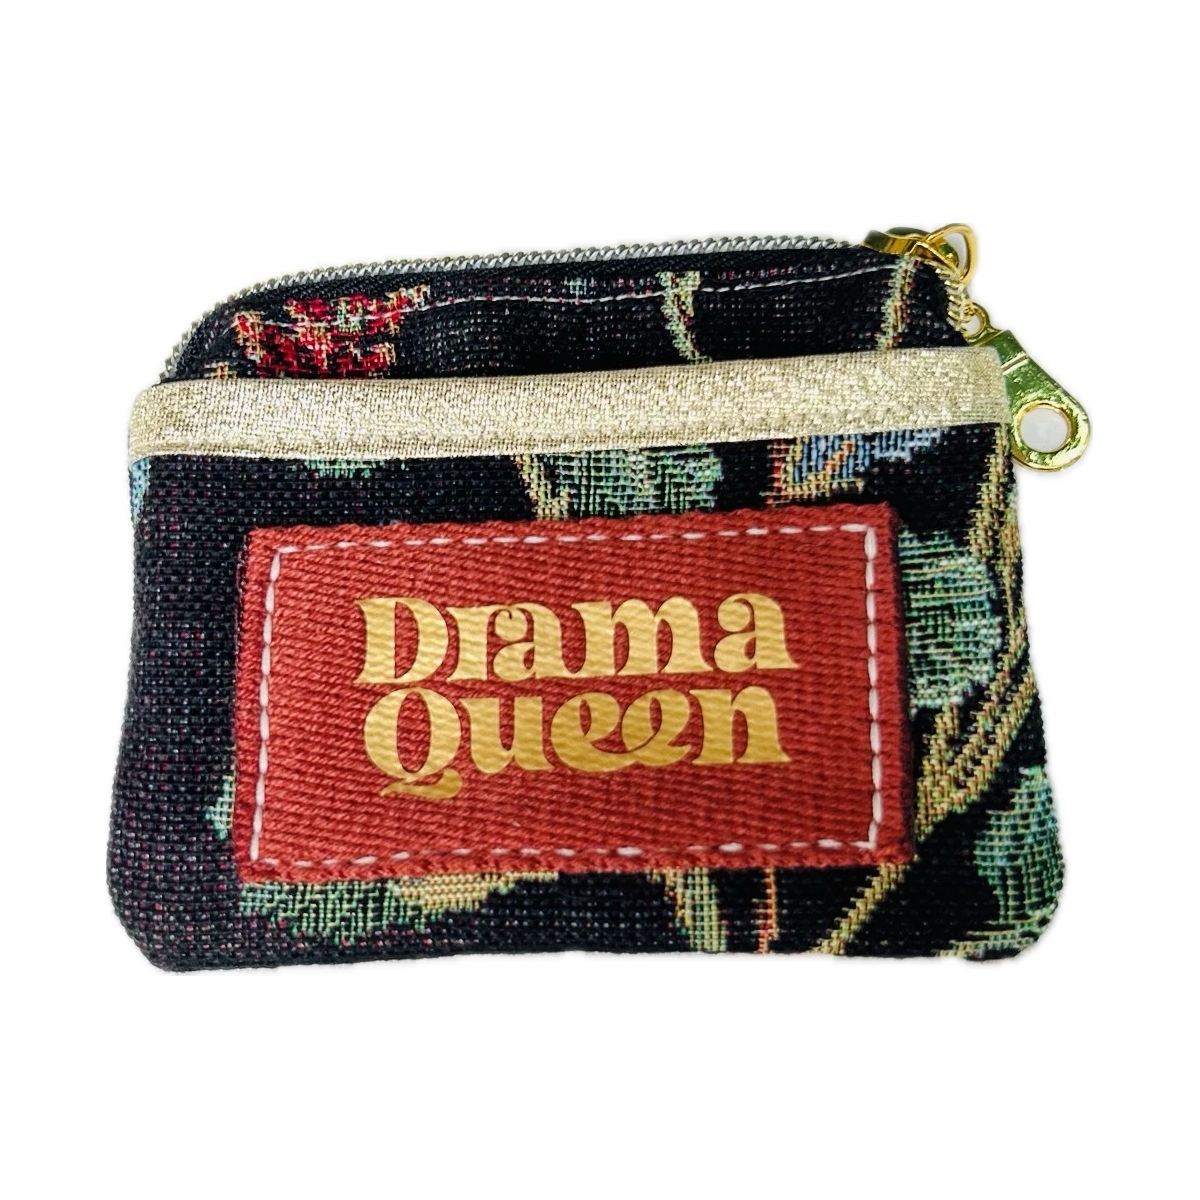 Porte-monnaie/porte-cartes en canevas "Drama Queen"